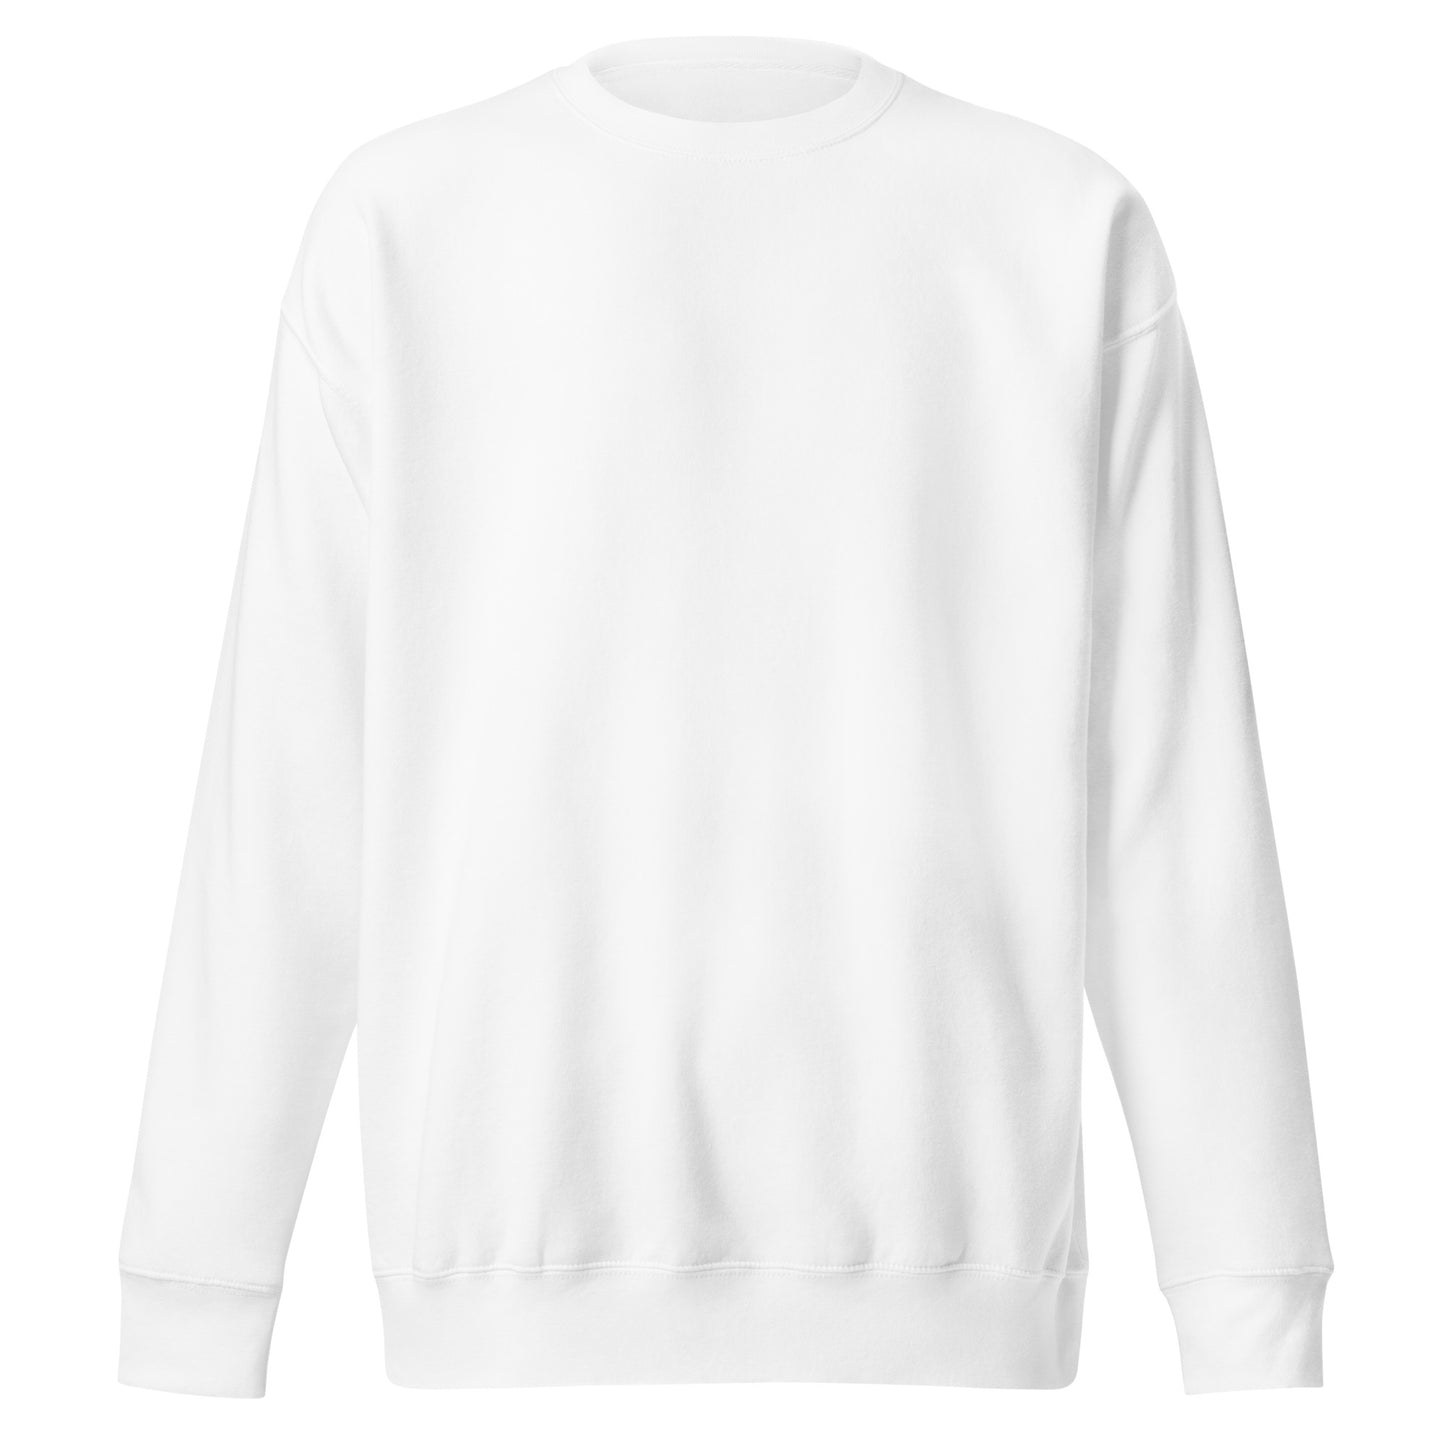 Retro DC Script - Unisex Premium Sweatshirt